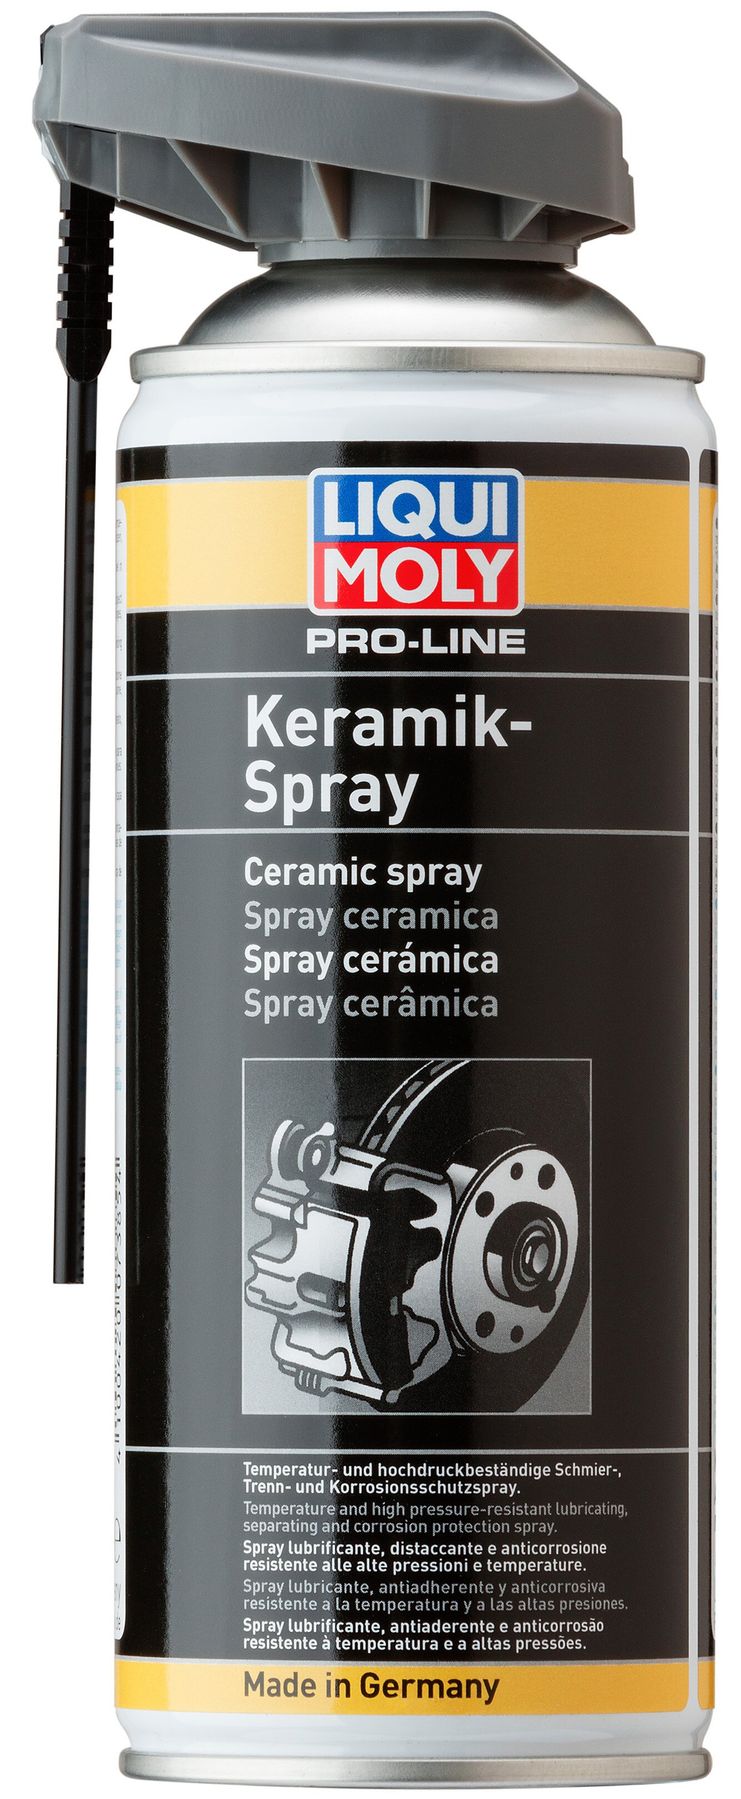 Liqui Moly Pro-Line Keramik-Spray - керамический спрей, 0.4л - LIQUI .